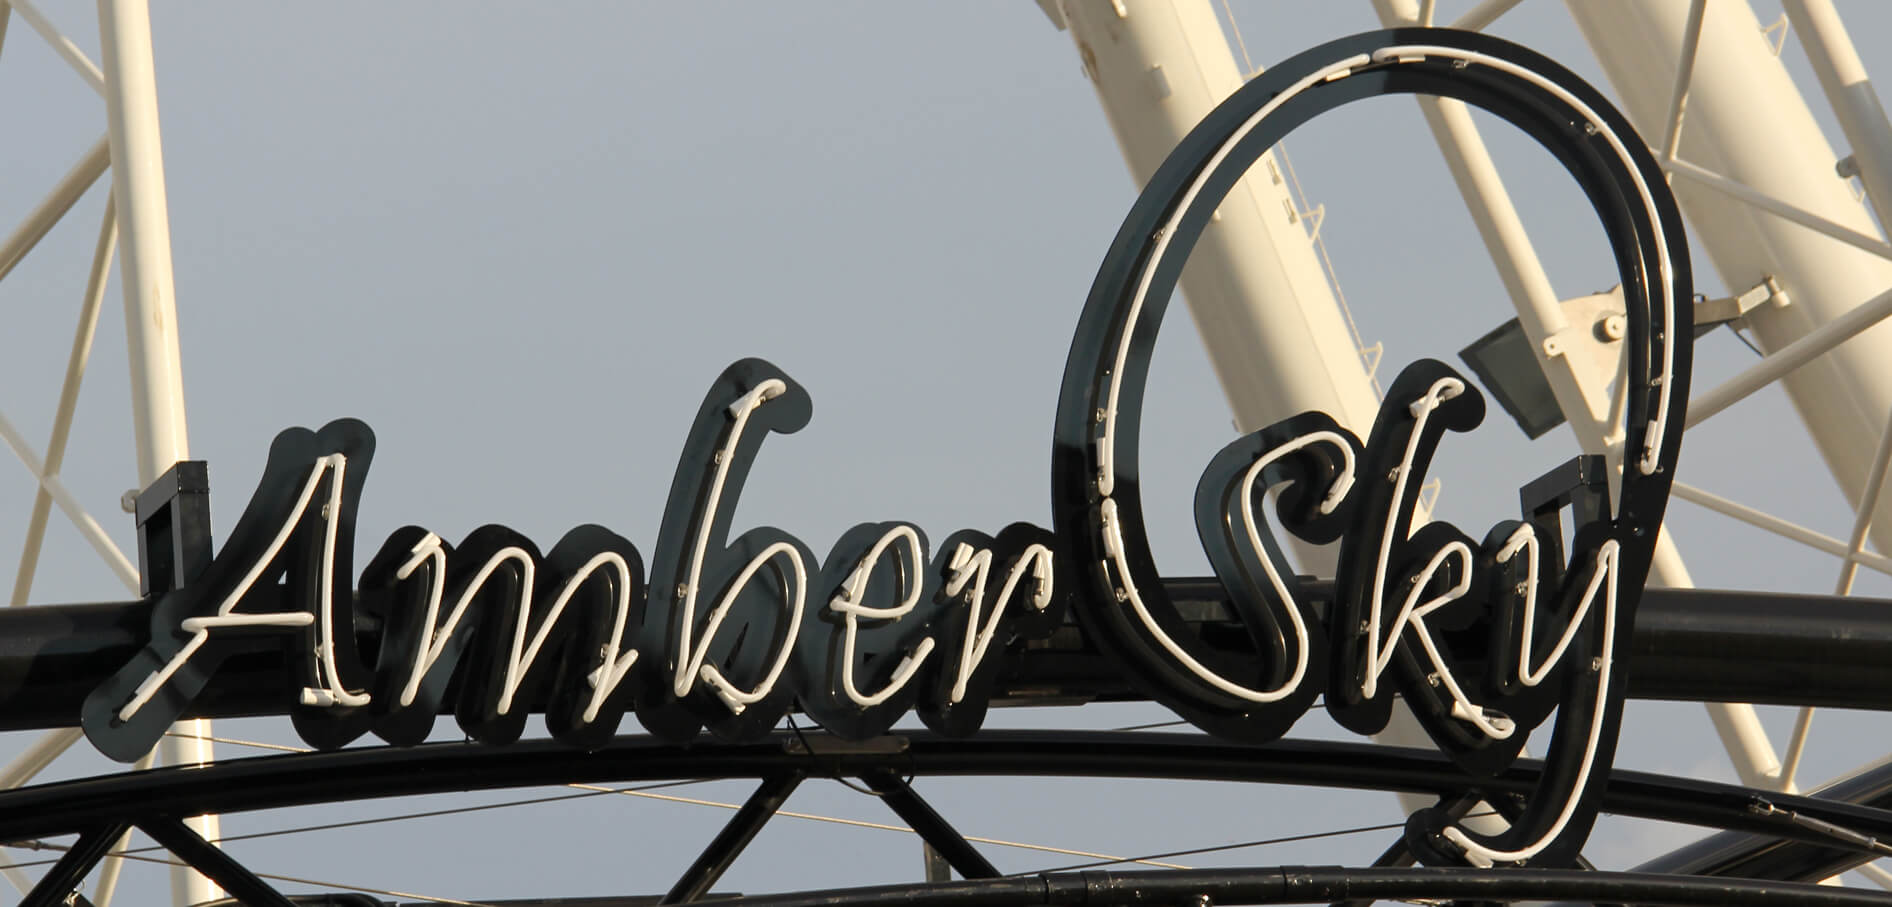 Bernsteinfarbener Himmel - Amber Sky - weißes Neonschild mit Firmenname auf dem Regal